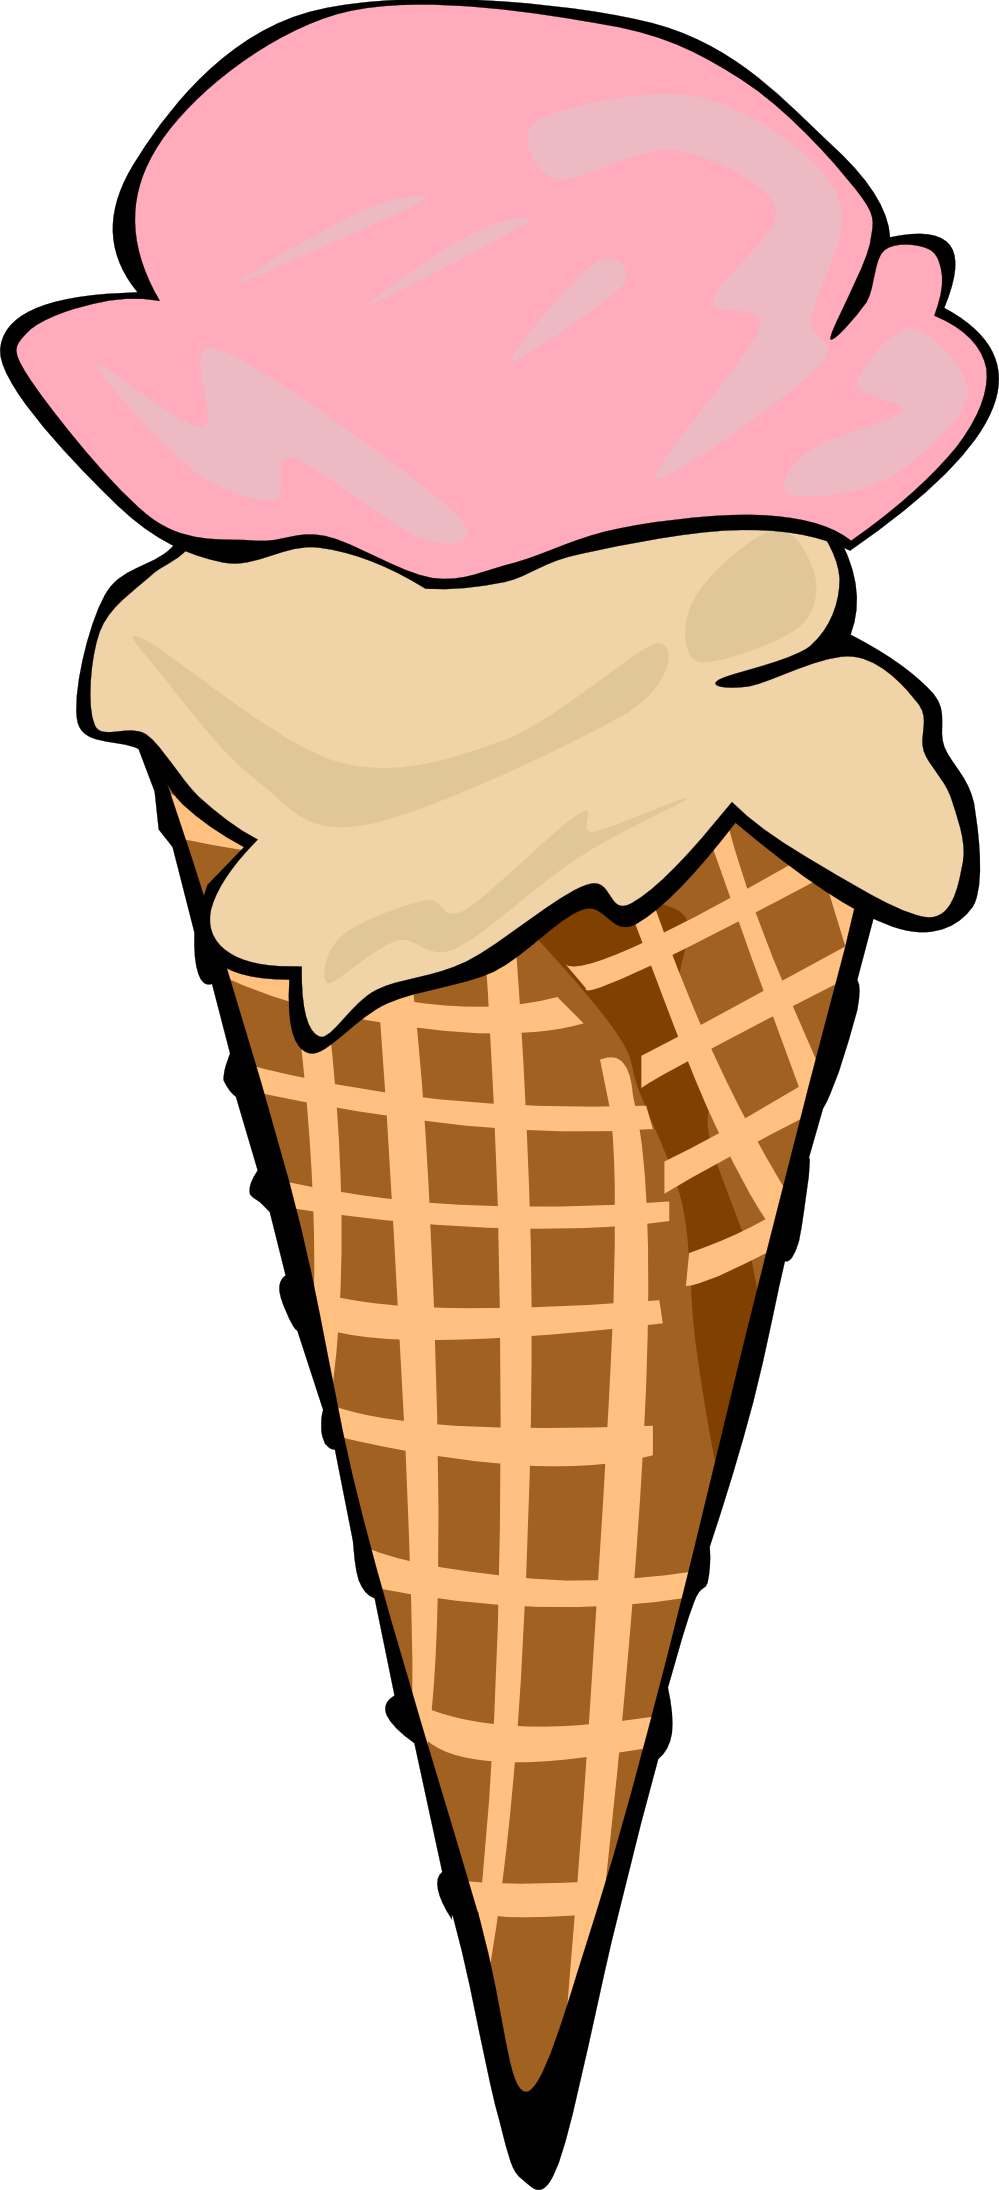 Images For > Empty Ice Cream Cones Clip Art